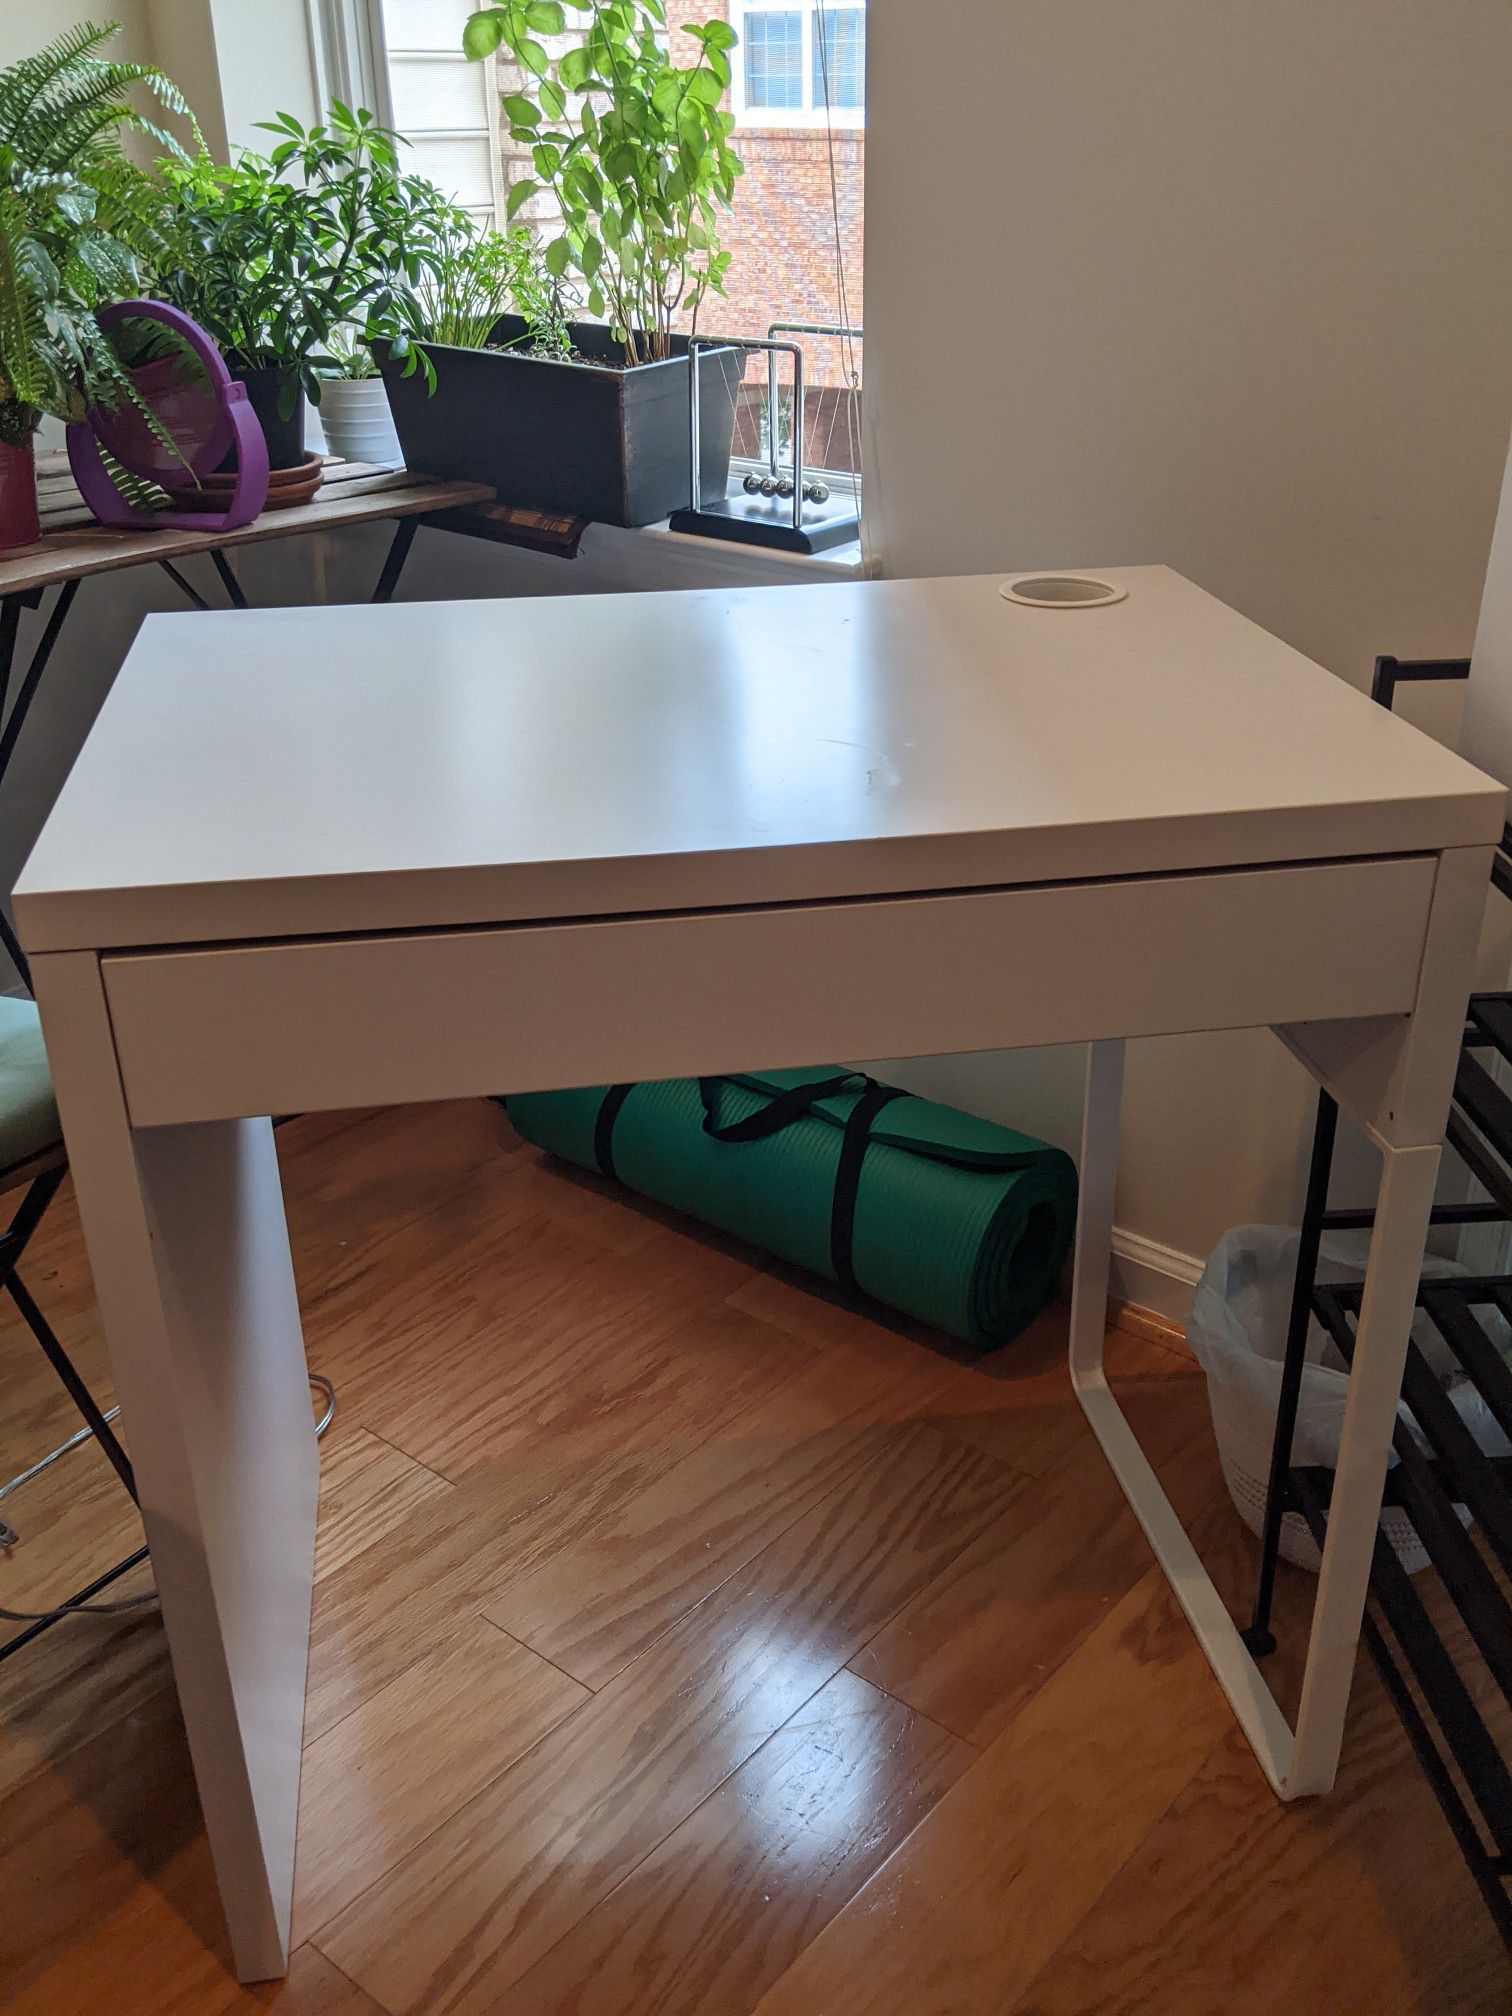 IKEA Make up vanities / desk